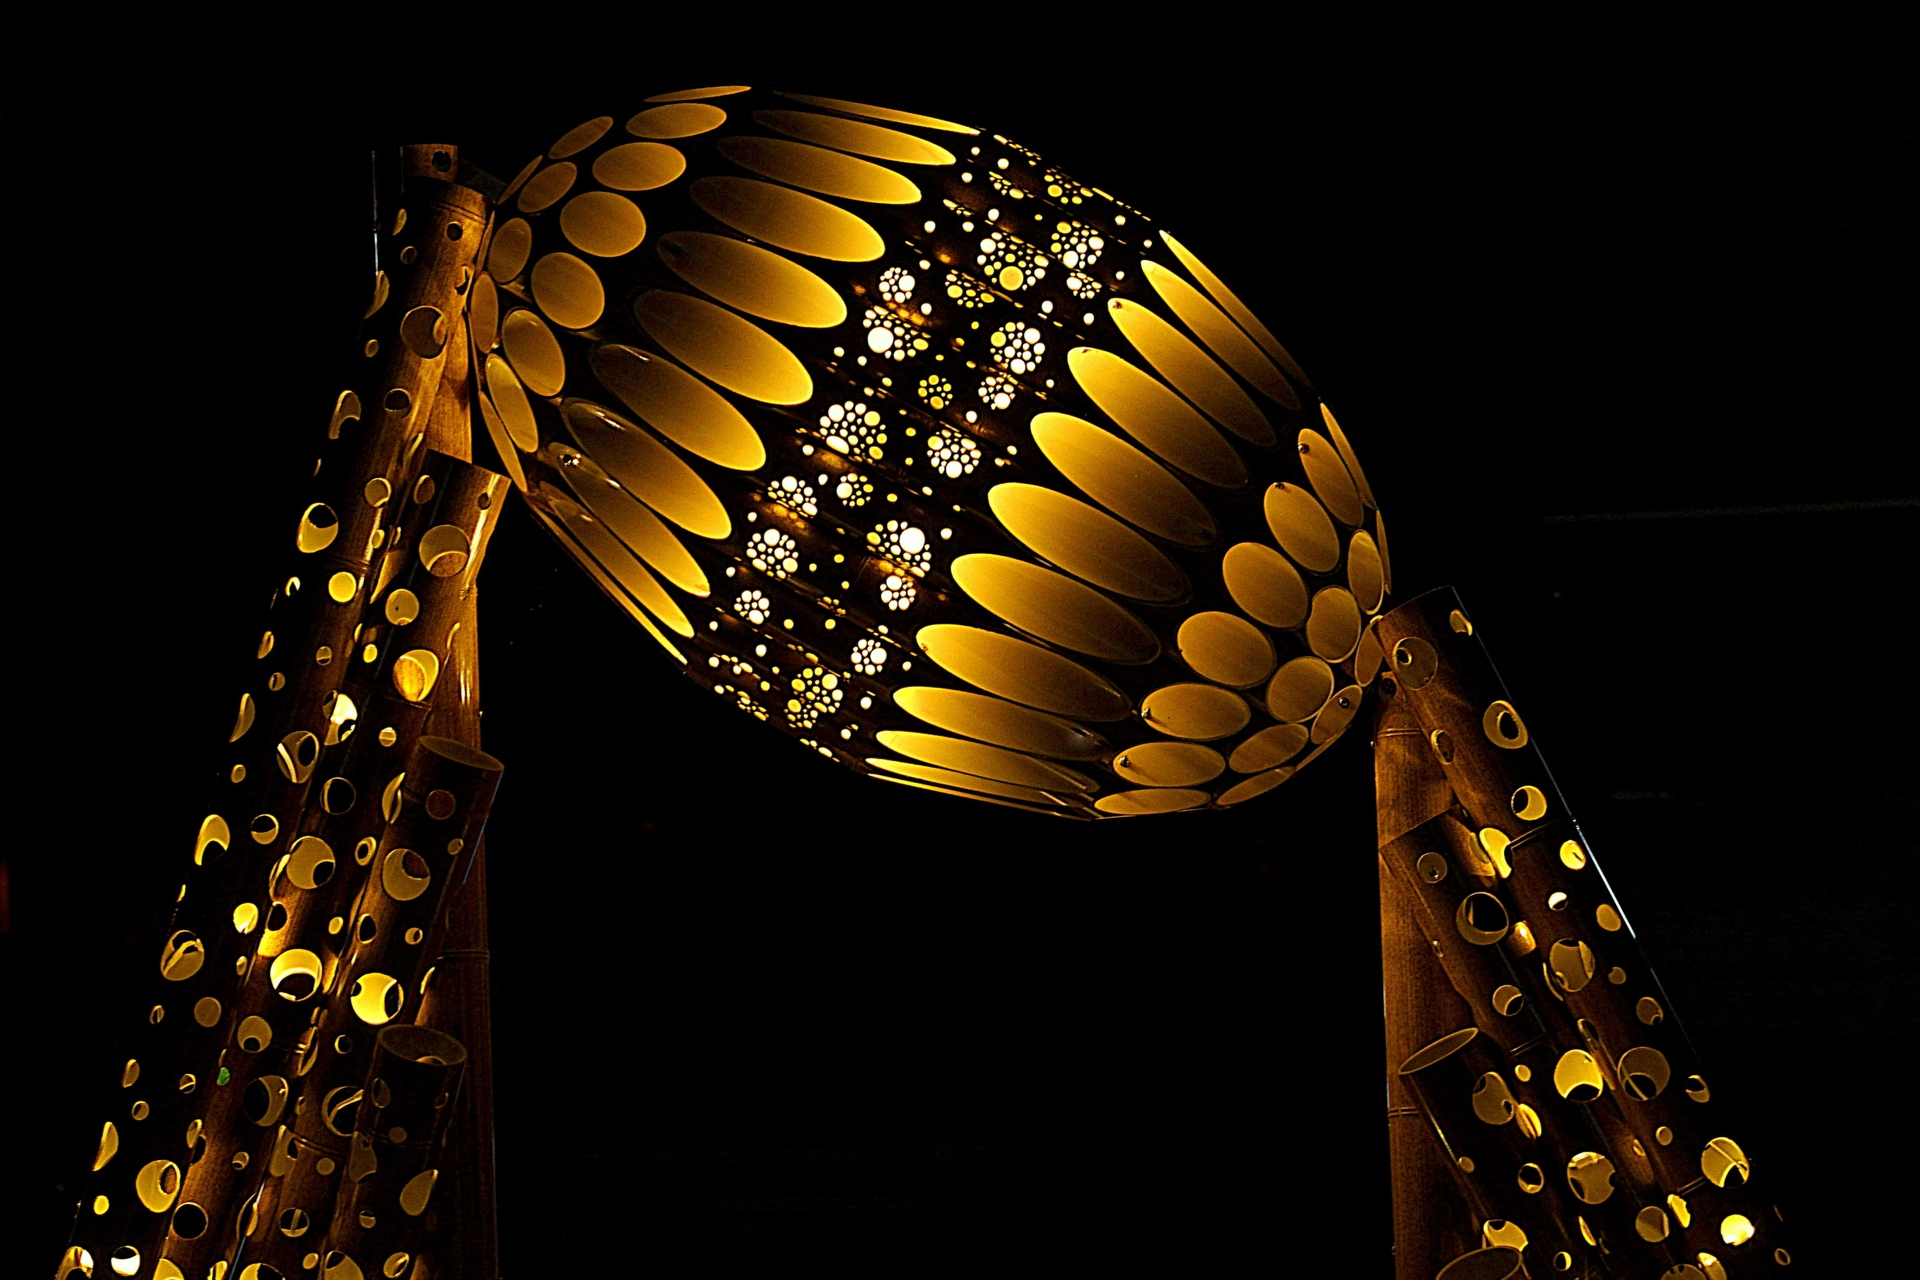 夜景 花火 イルミ ラグビーボールの竹灯り 壁紙19x1280 壁紙館